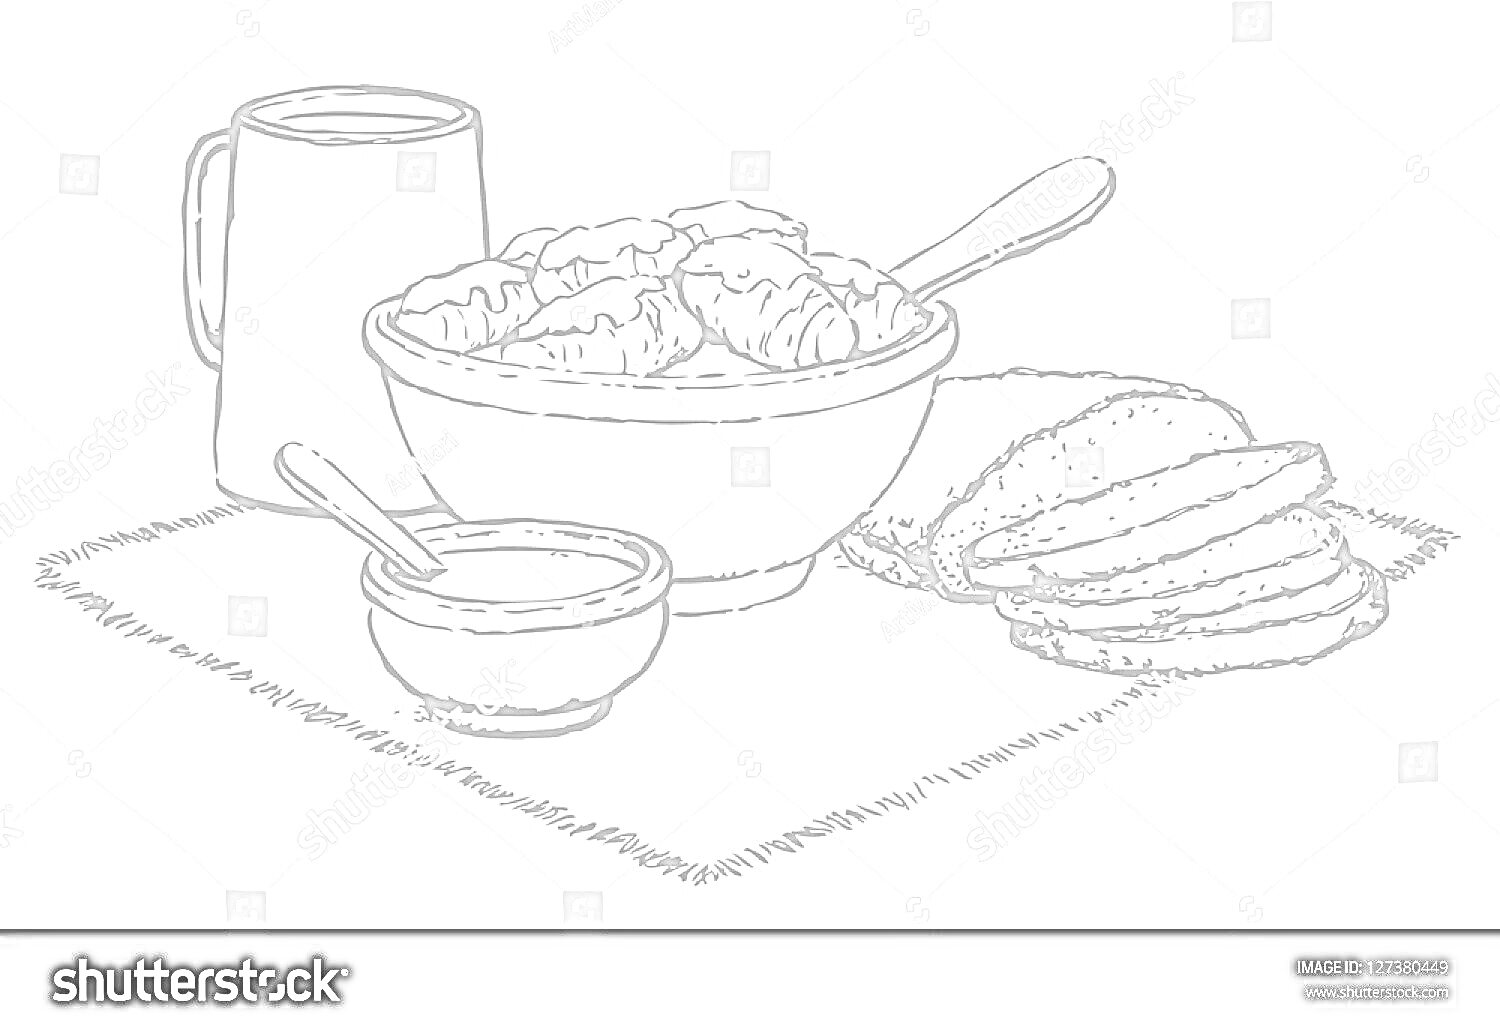 Раскраска Драники в большой миске с ложкой, маленькая миска с соусом и ложкой, кувшин, нарезанный хлеб на полотенце